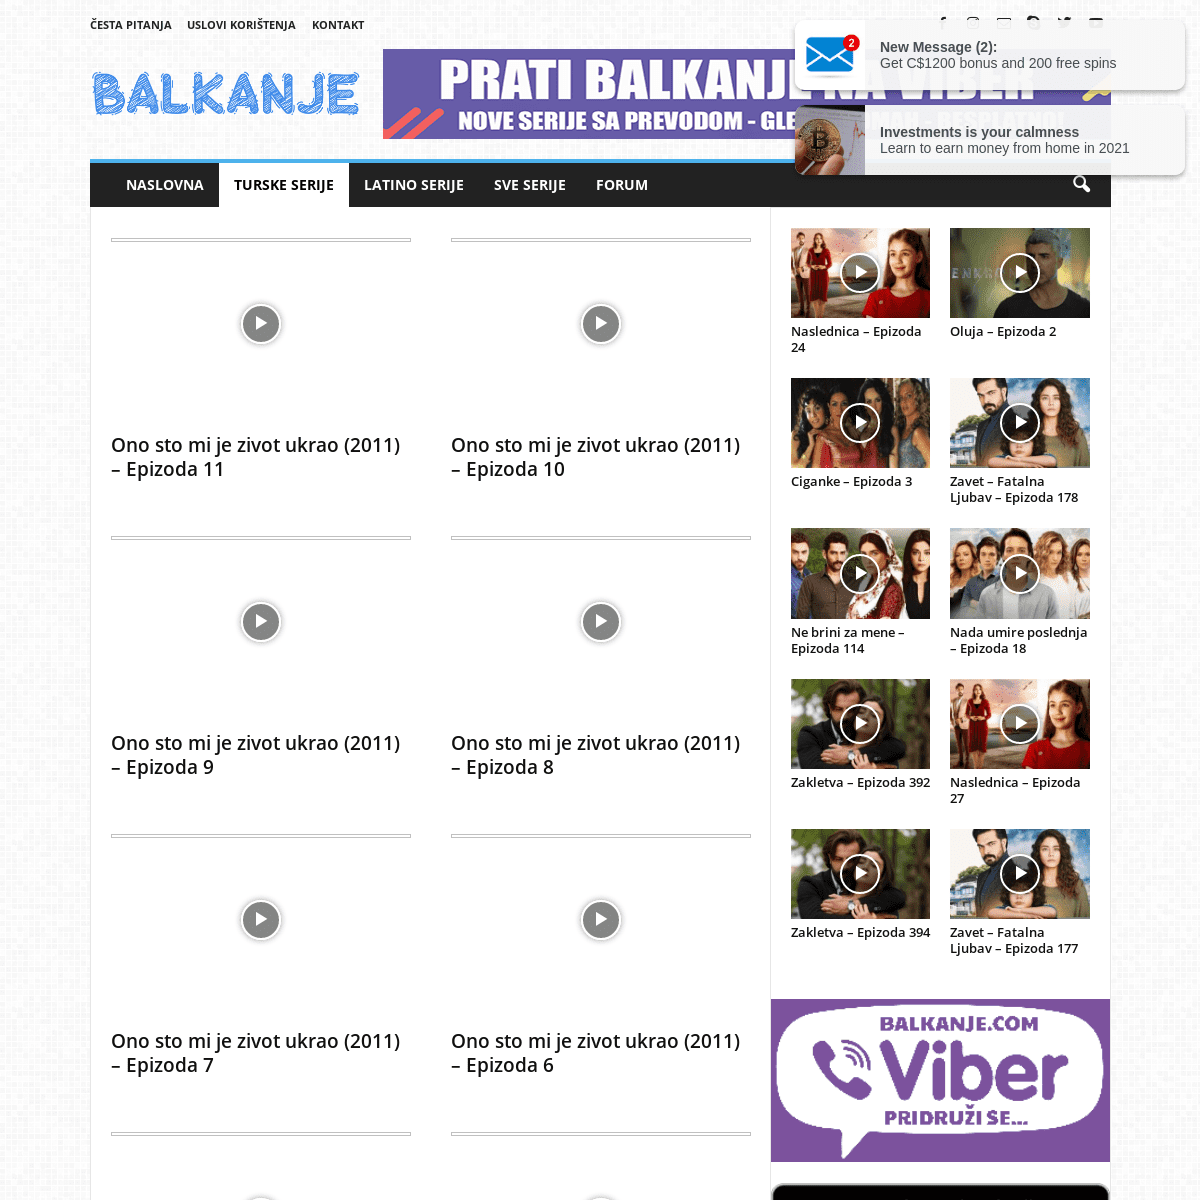 A complete backup of https://balkanje.com/turske-serije/ono-sto-mi-je-zivot-ukrao-2015/